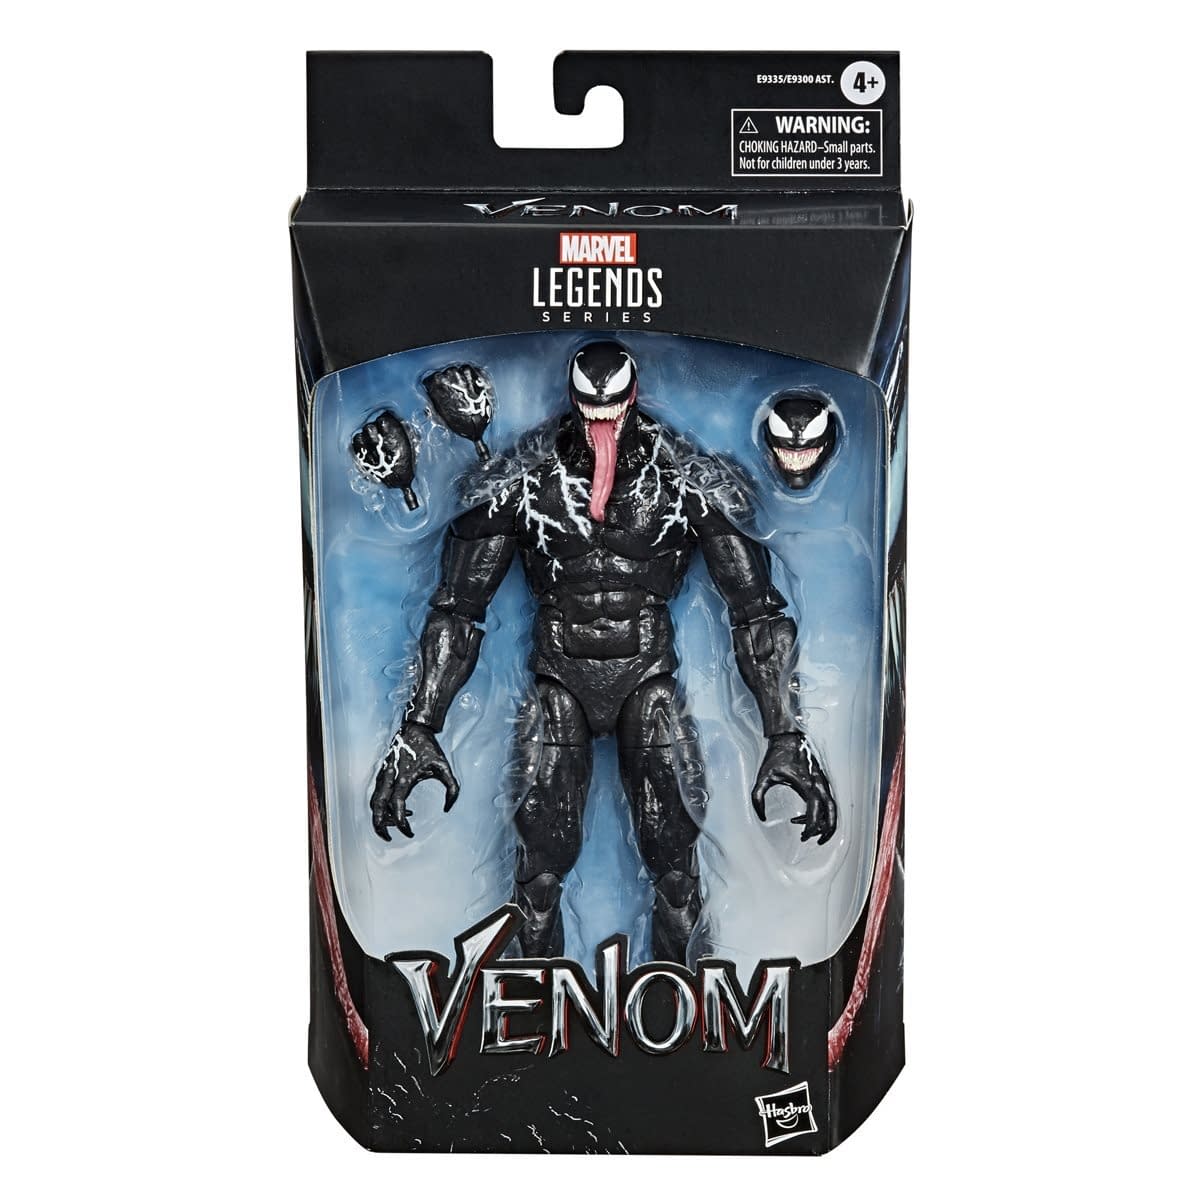 Venom Marvel Legends Action Figur Film 2018 Sammler Spiderman Figuren OVP Film 